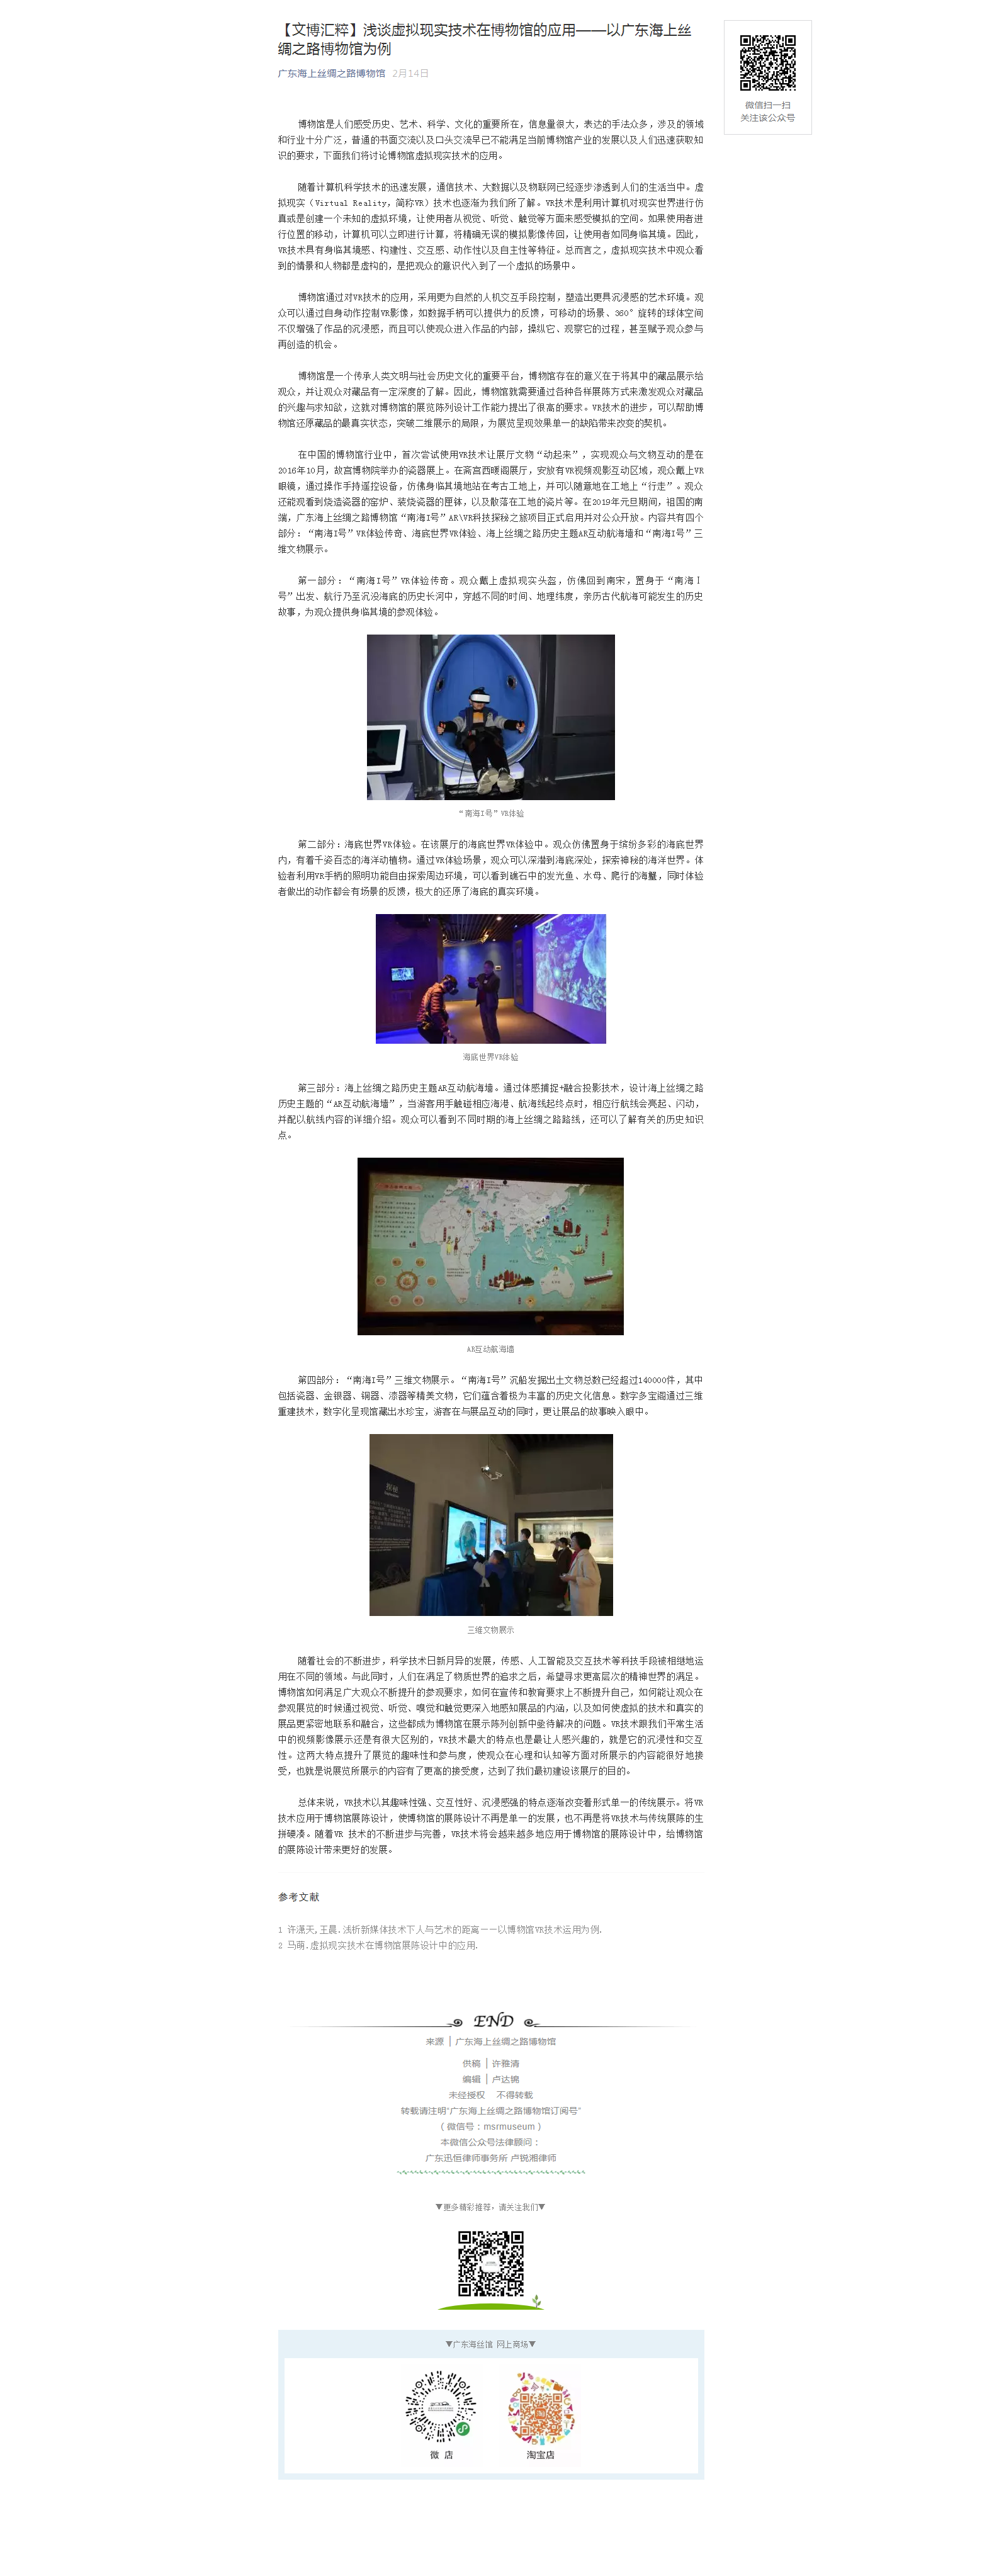 【文博汇粹】浅谈虚拟现实技术在博物馆的应用——以广东海上丝绸之路博物馆为例.png